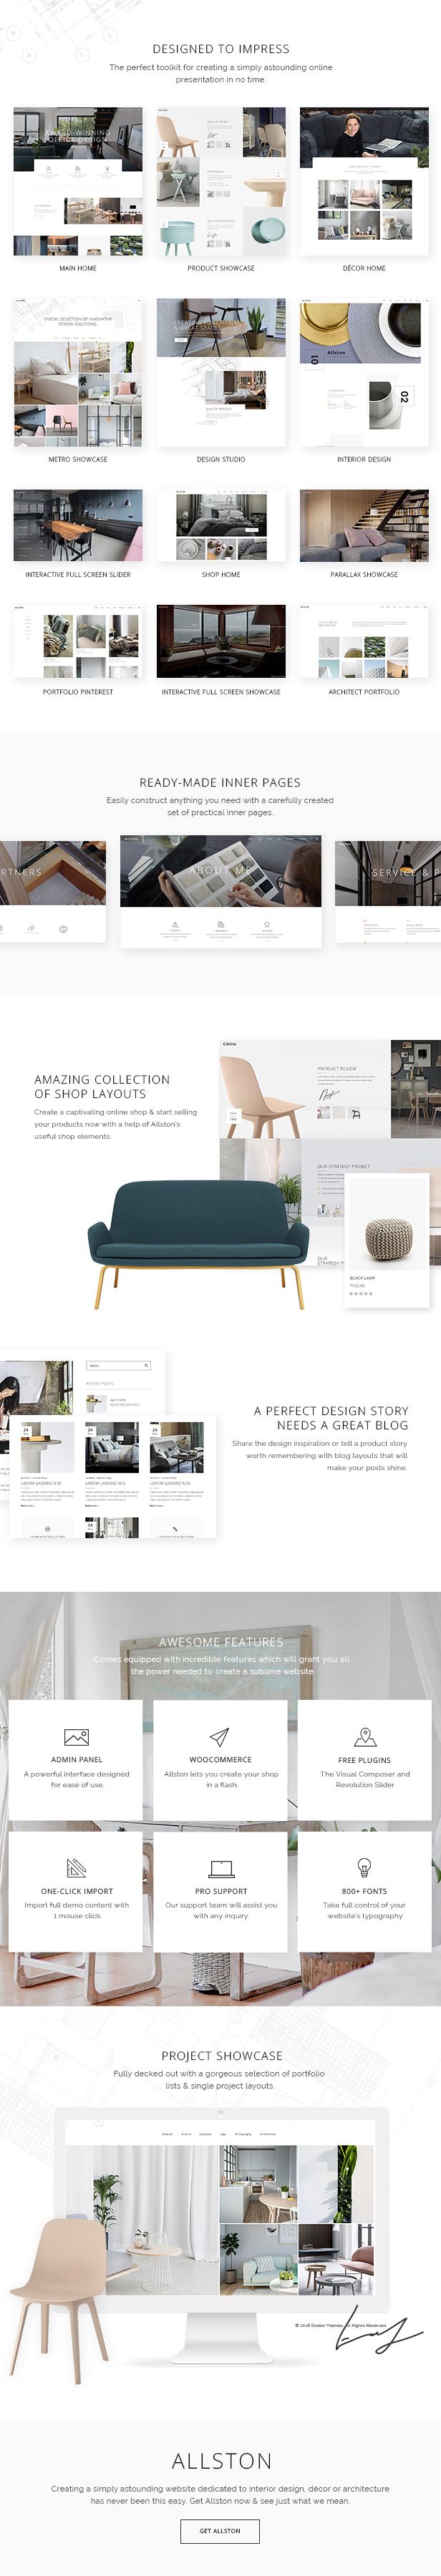 WordPress theme Allston - A Contemporary Theme for Interior Design and Architecture (Portfolio)